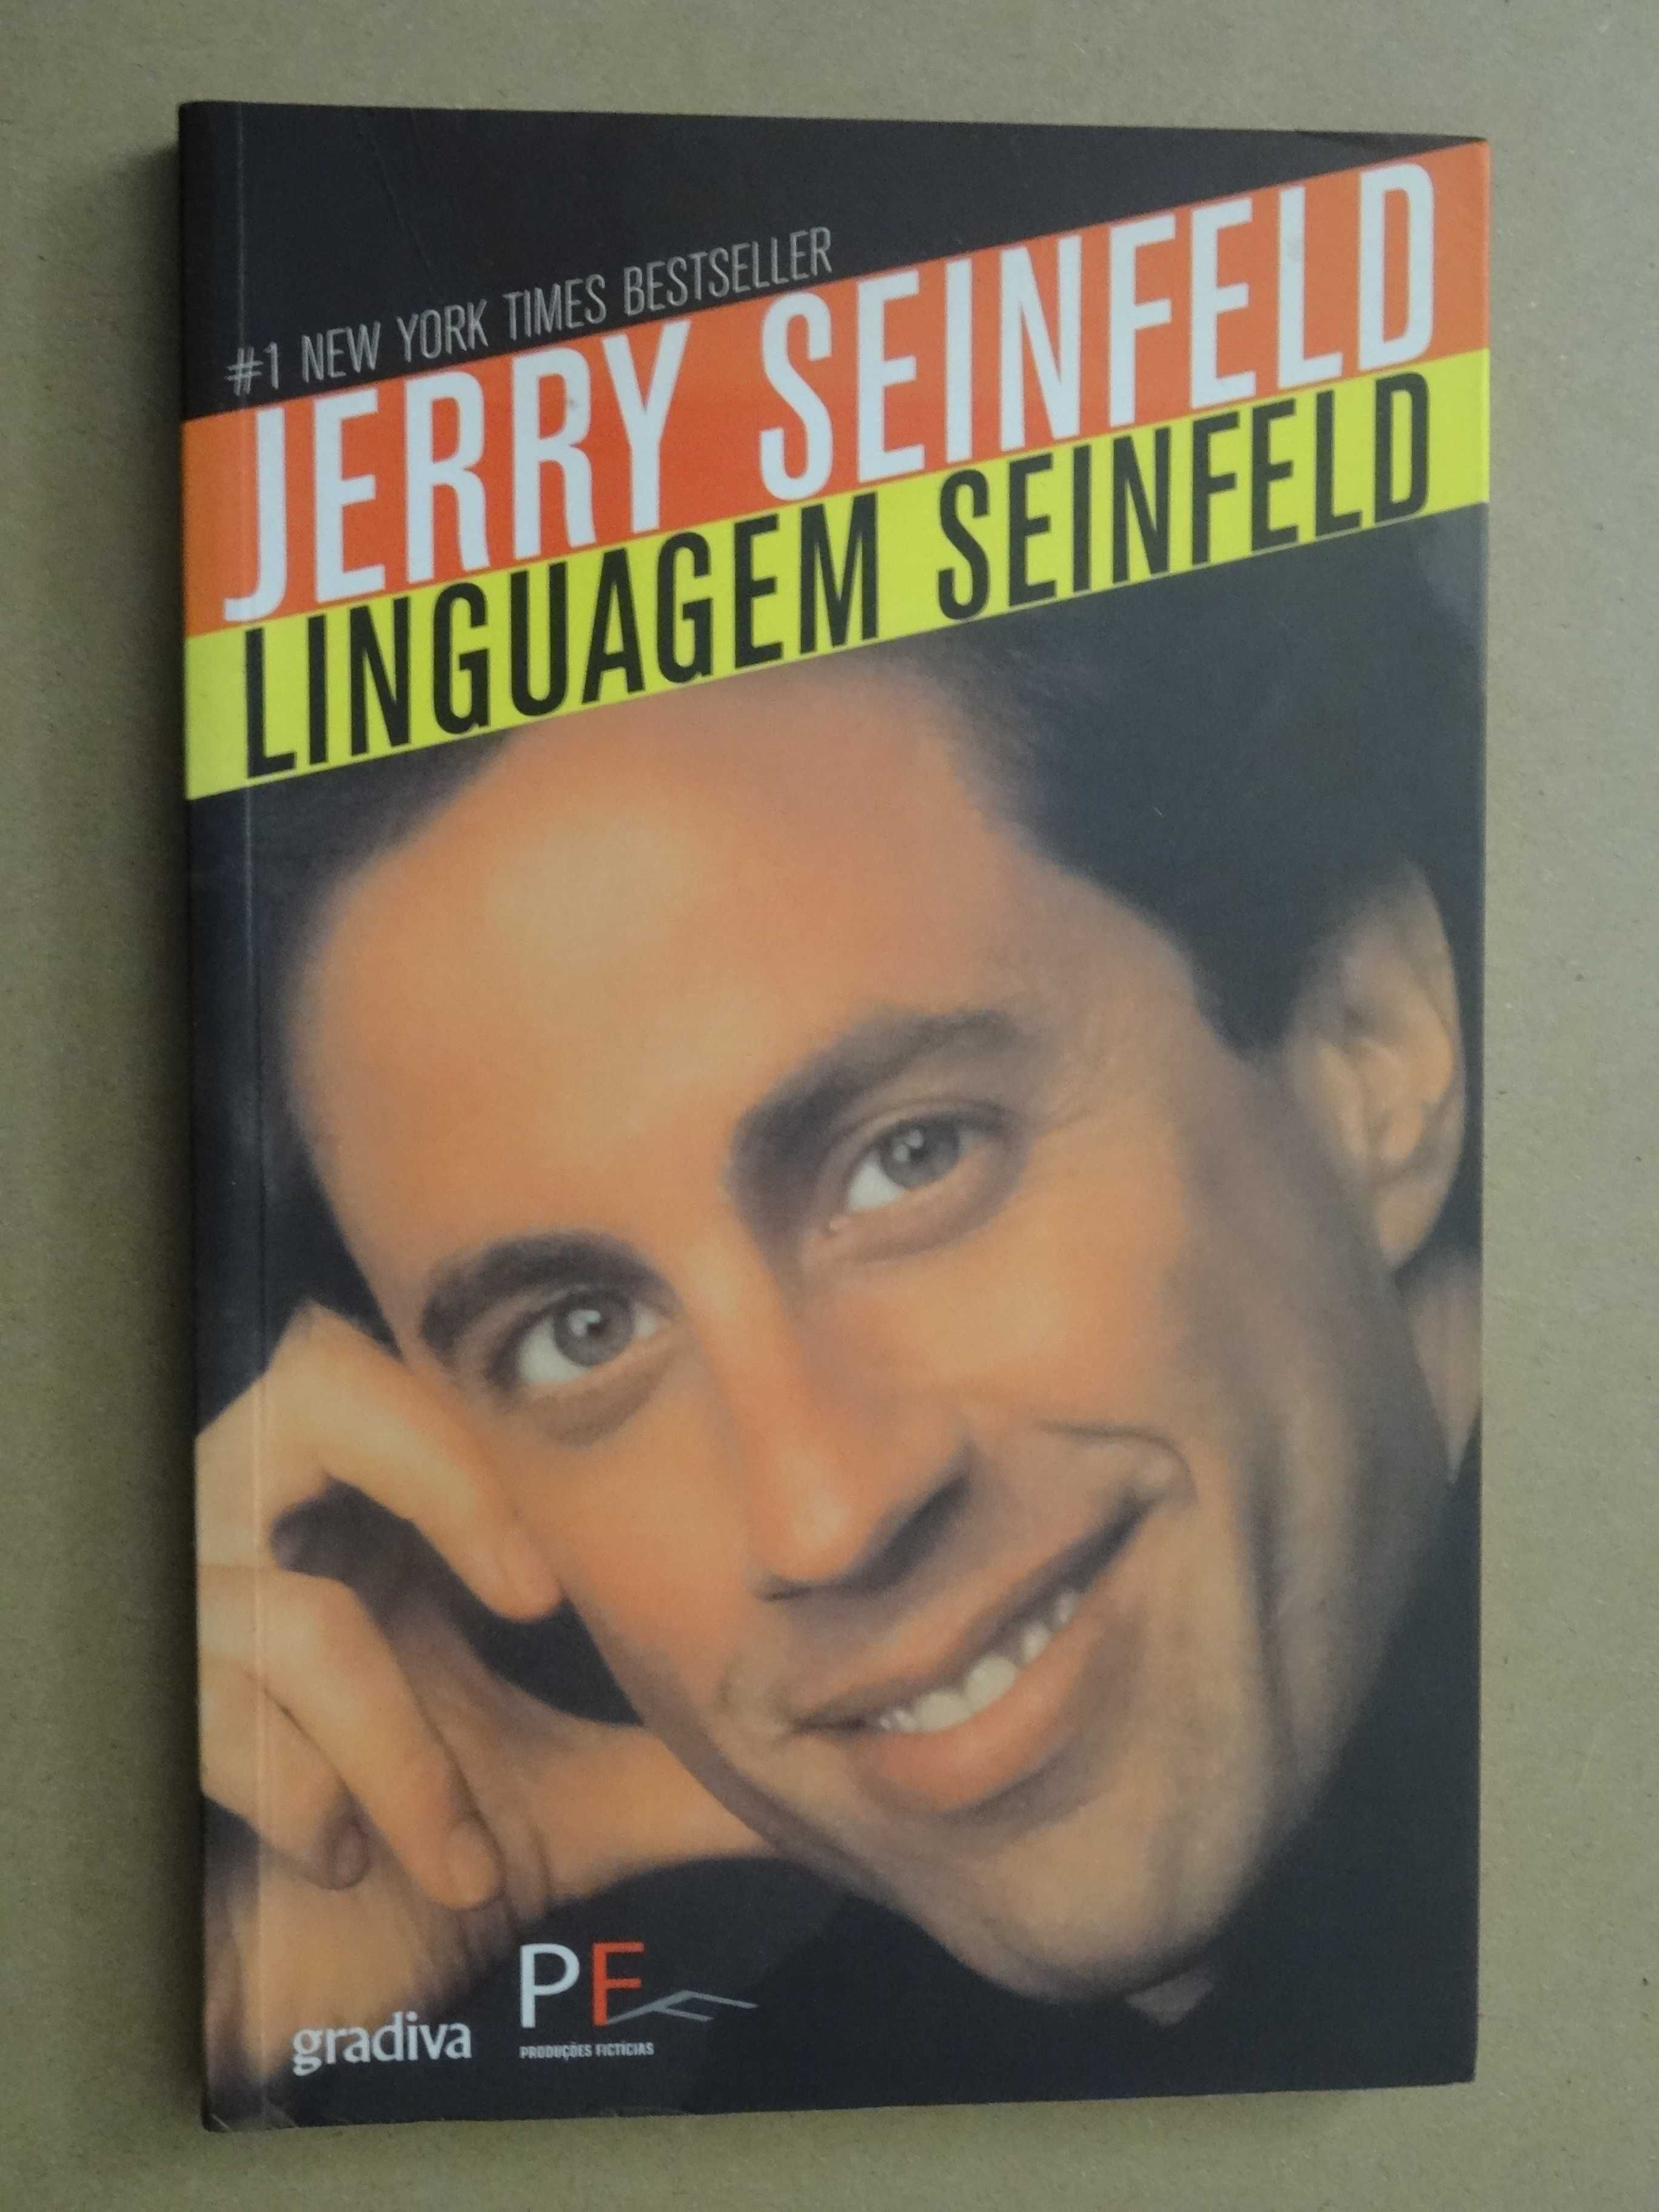 Linguagem Seinfeld de Jerry Seinfeld